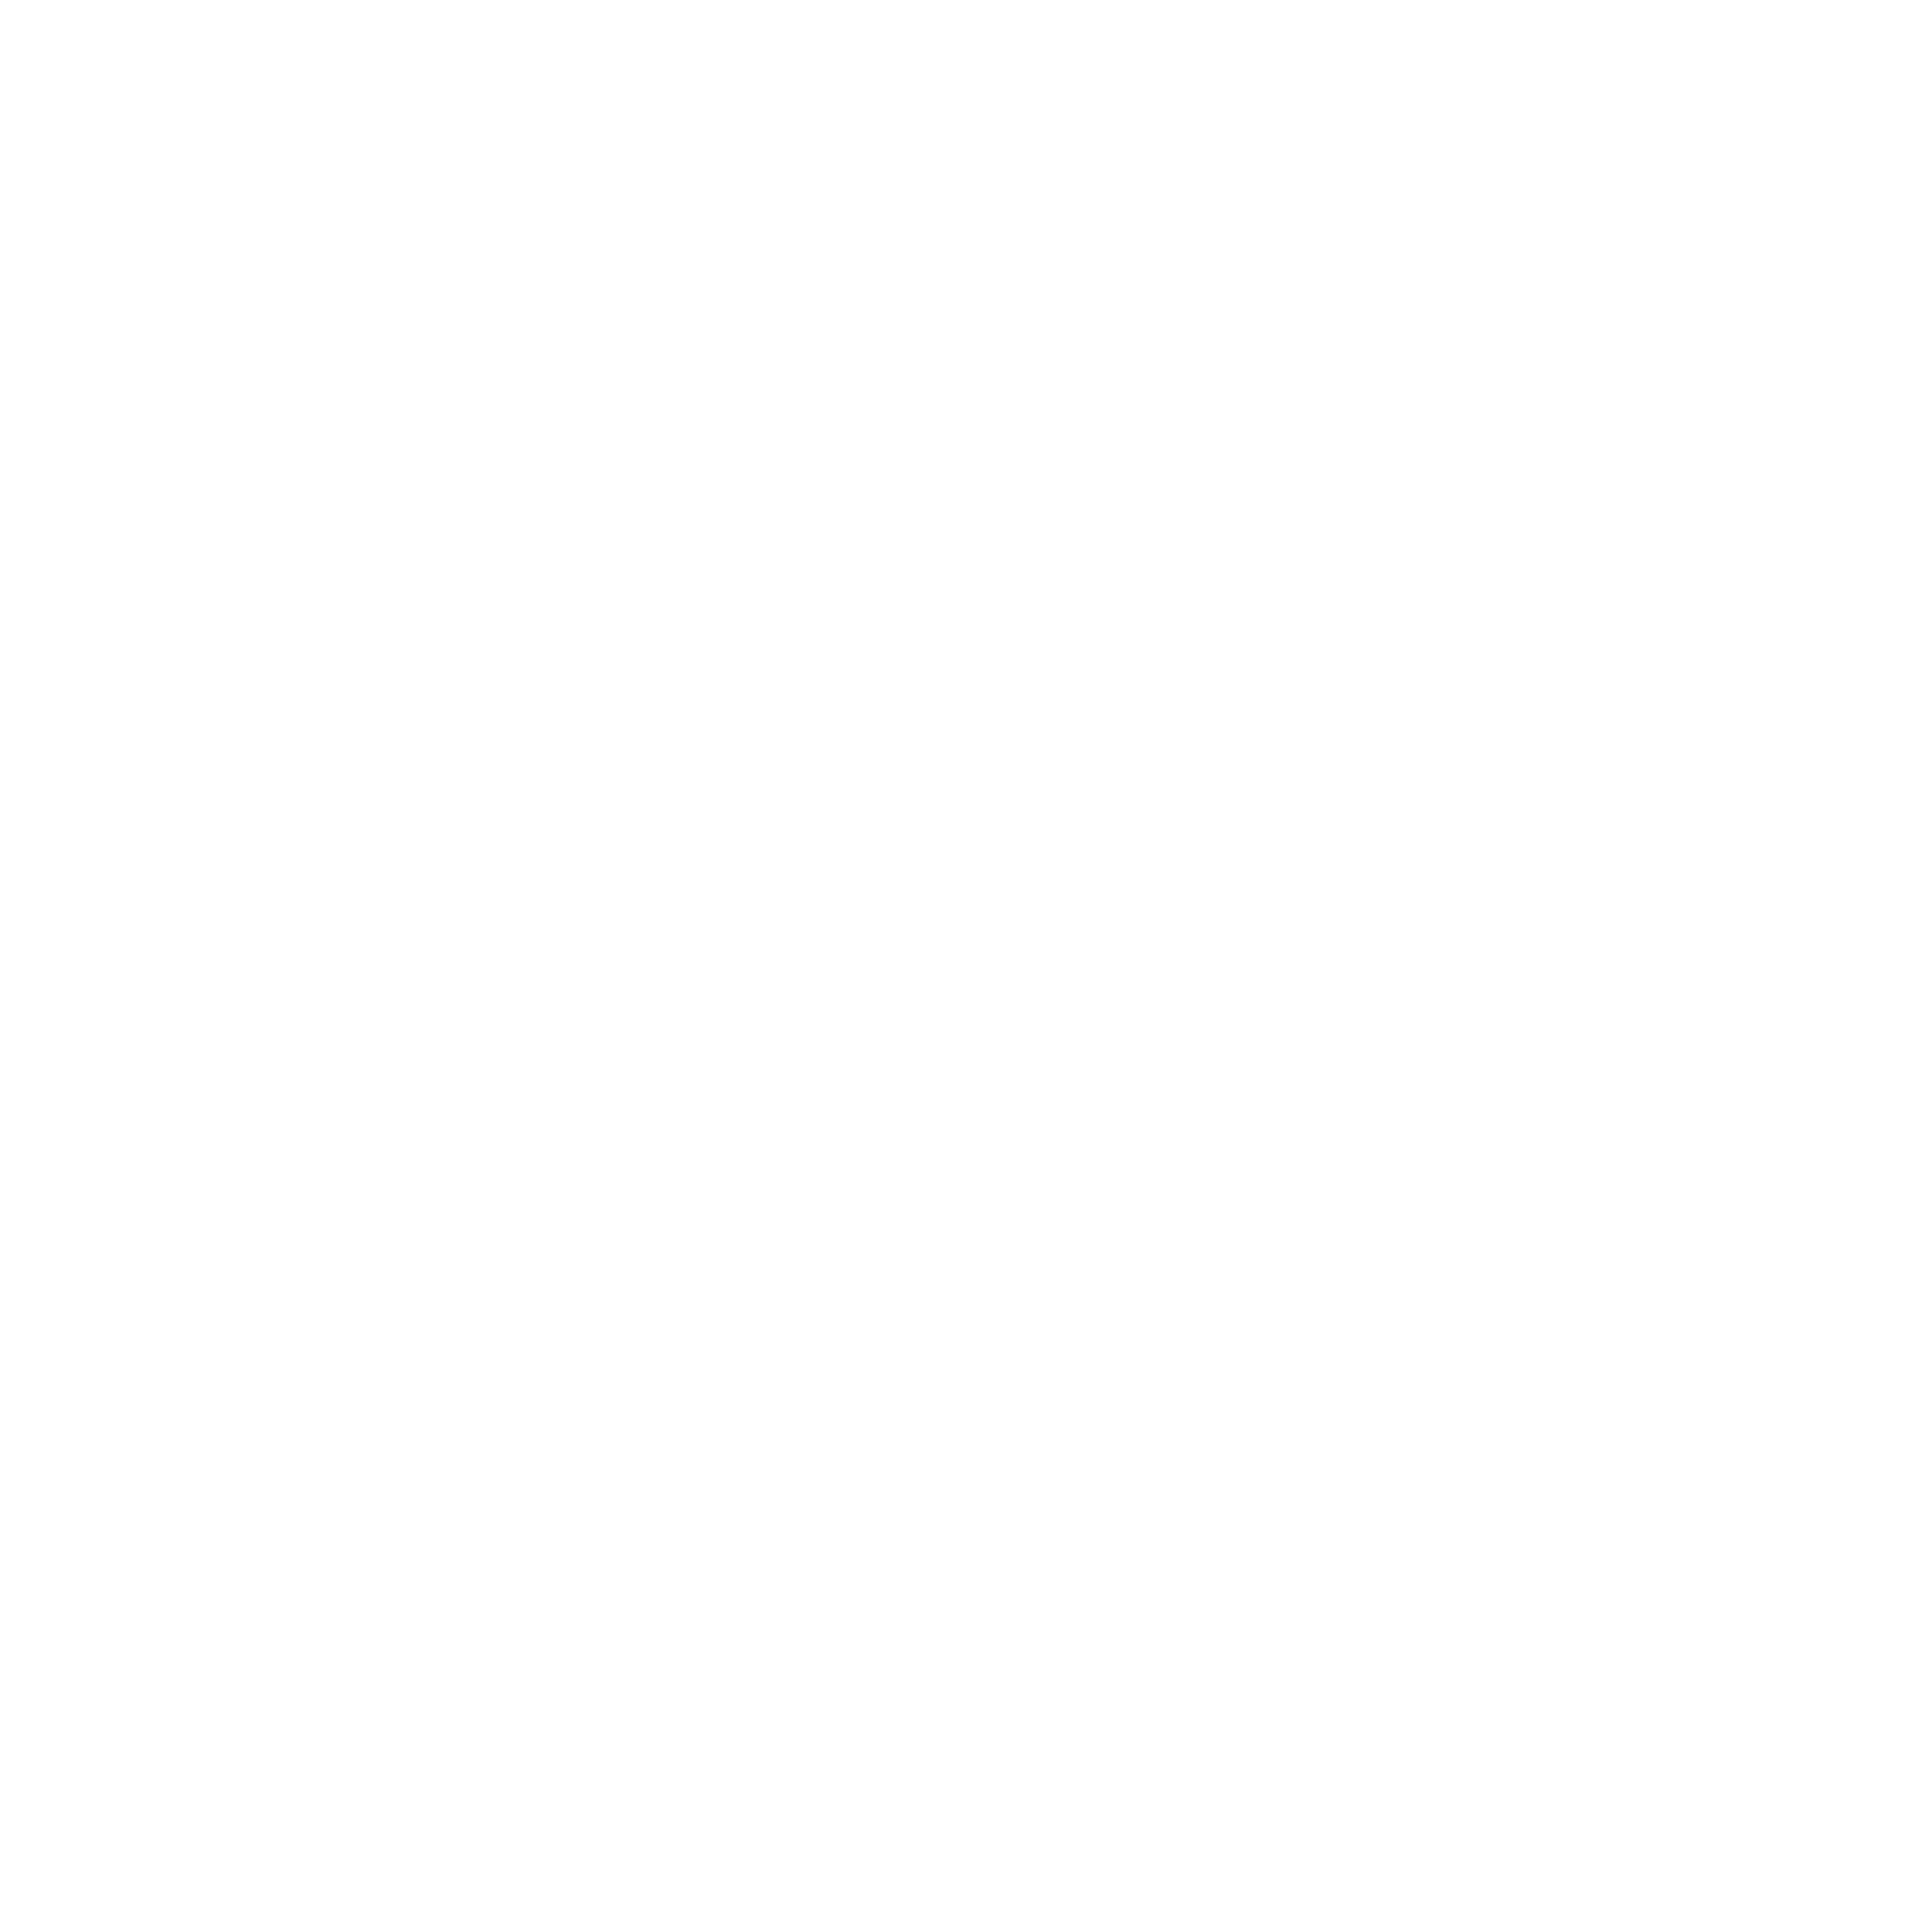 Whitethread Institute